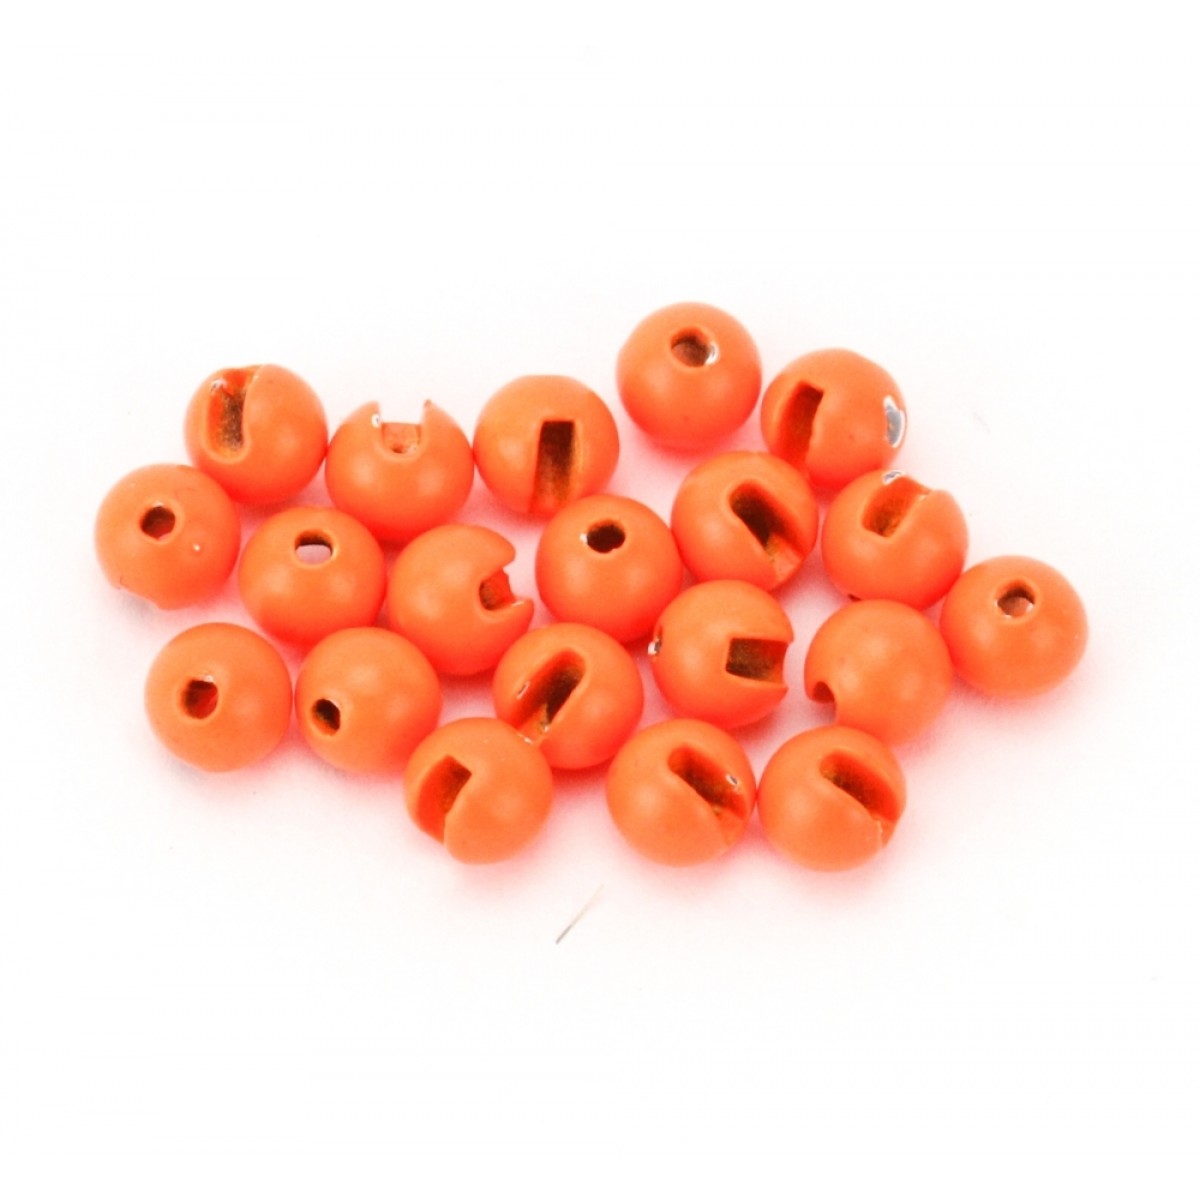 Tungsten Perlen geschlitzt (fluoro-orange)